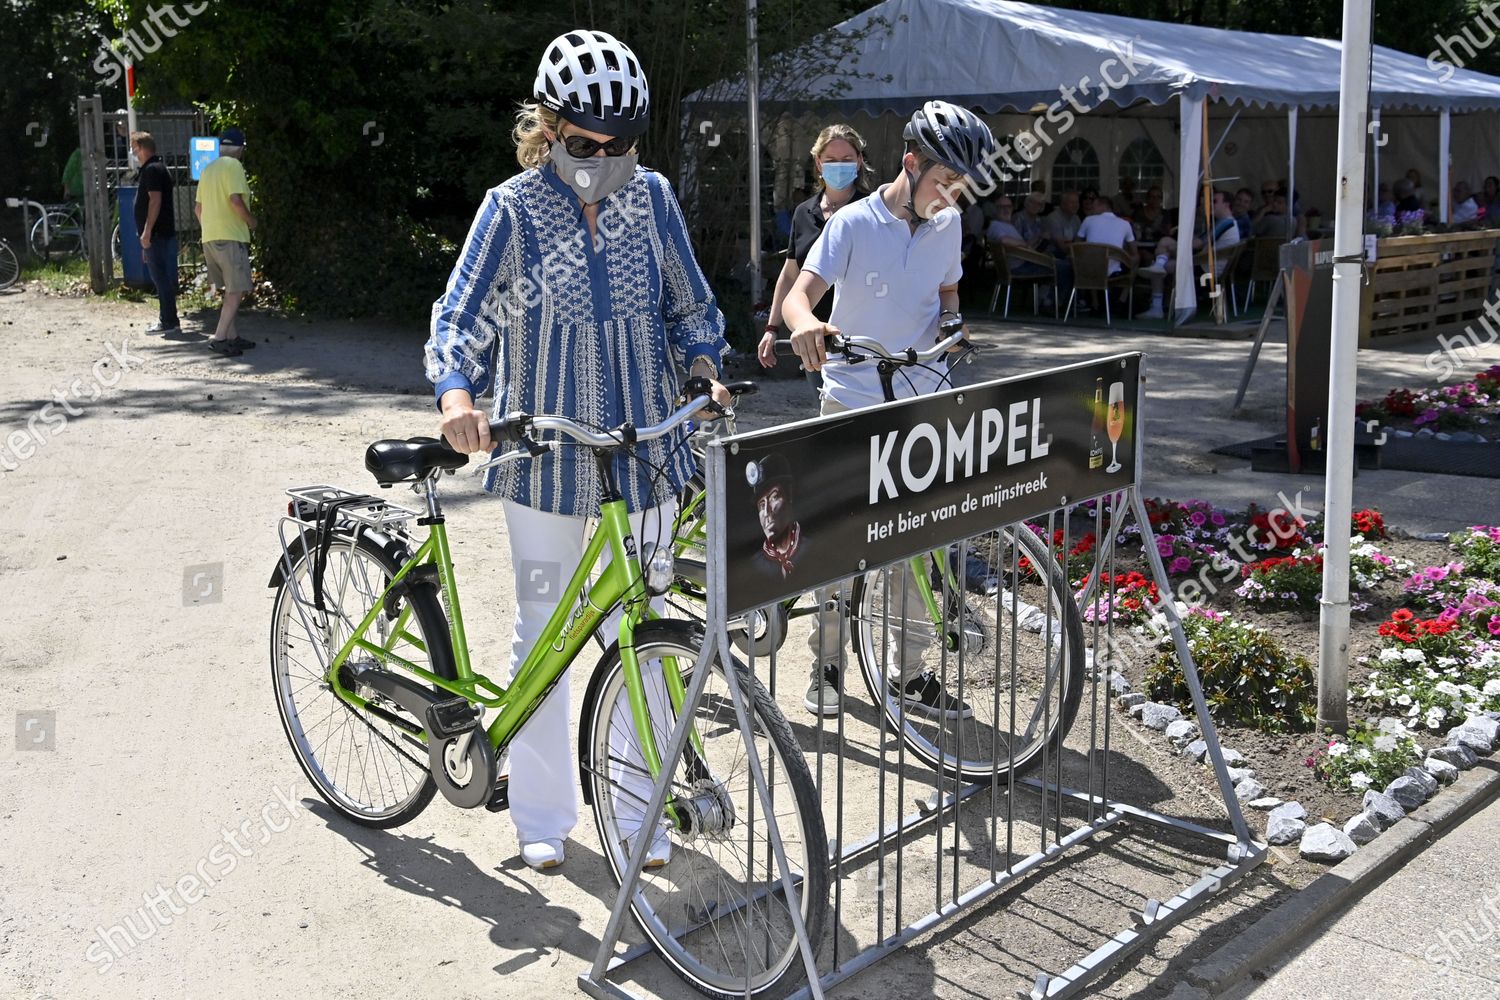 royals-vacation-bokrijk-bike-genk-belgium-shutterstock-editorial-10693093i.jpg